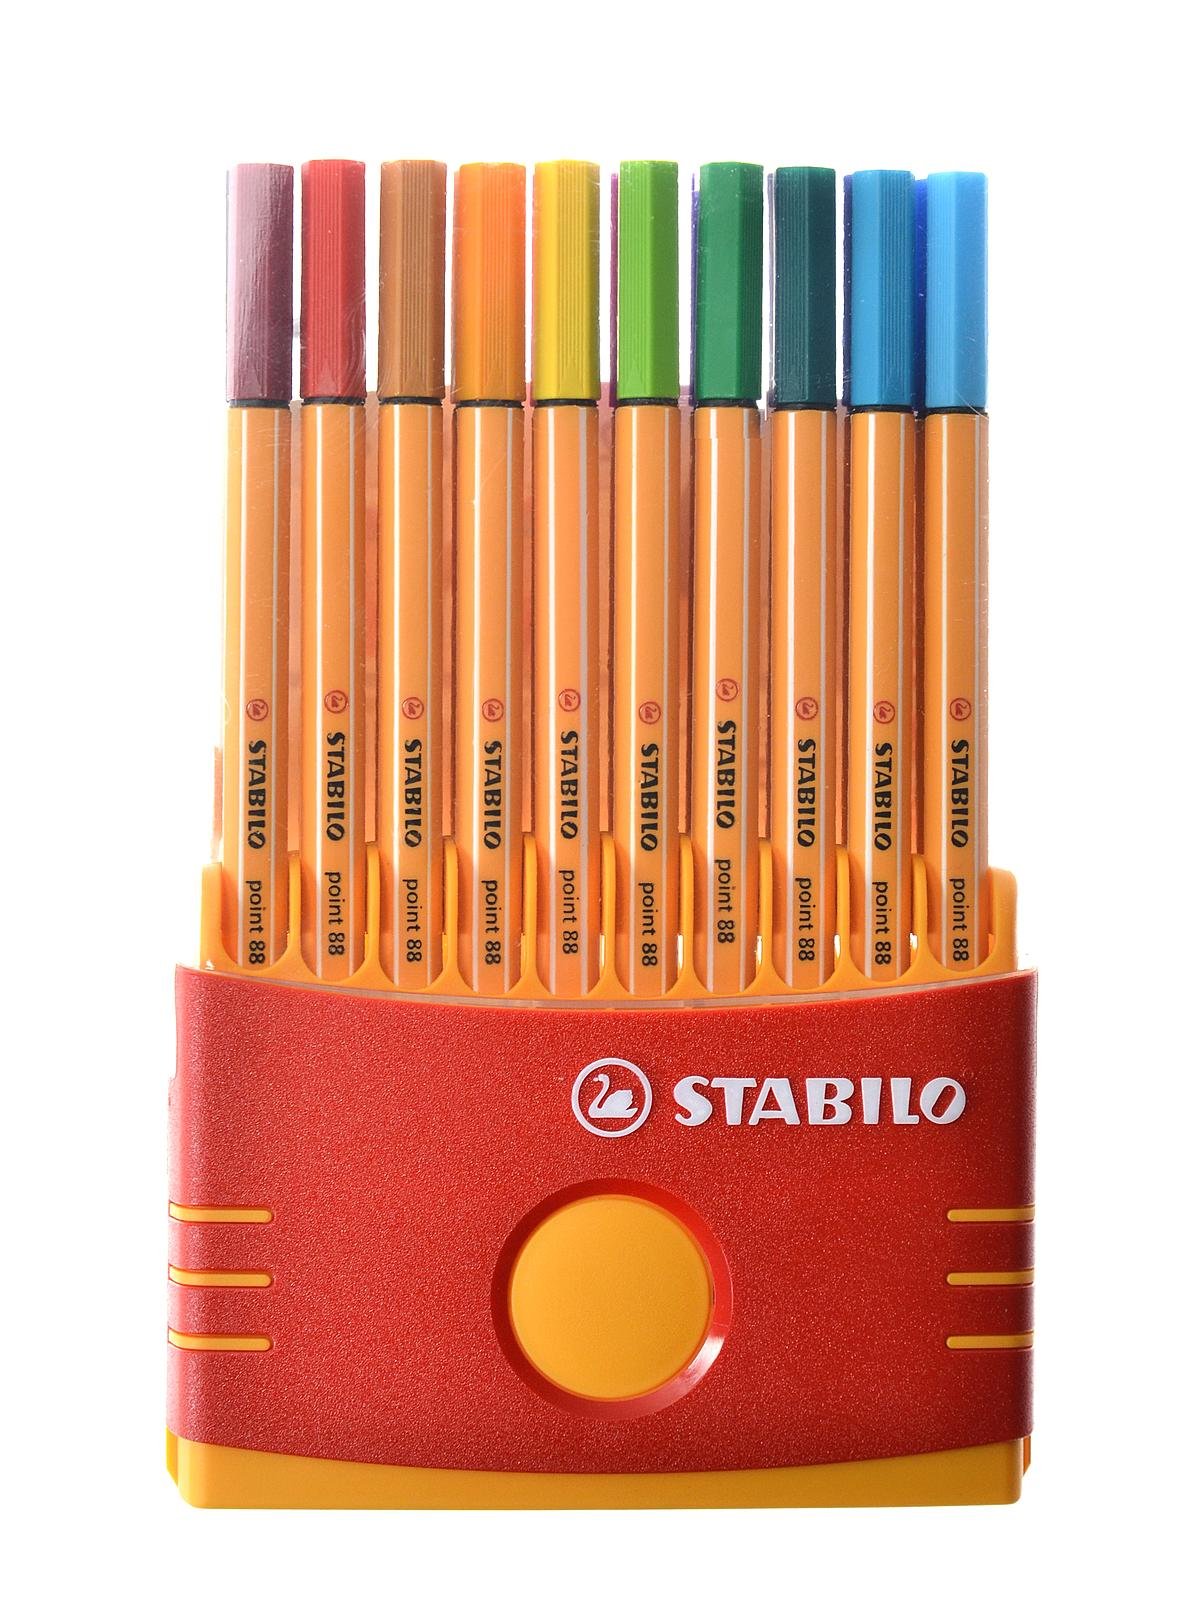 Absoluut Bezwaar Schaar Stabilo Point 88 Pen Sets | MisterArt.com